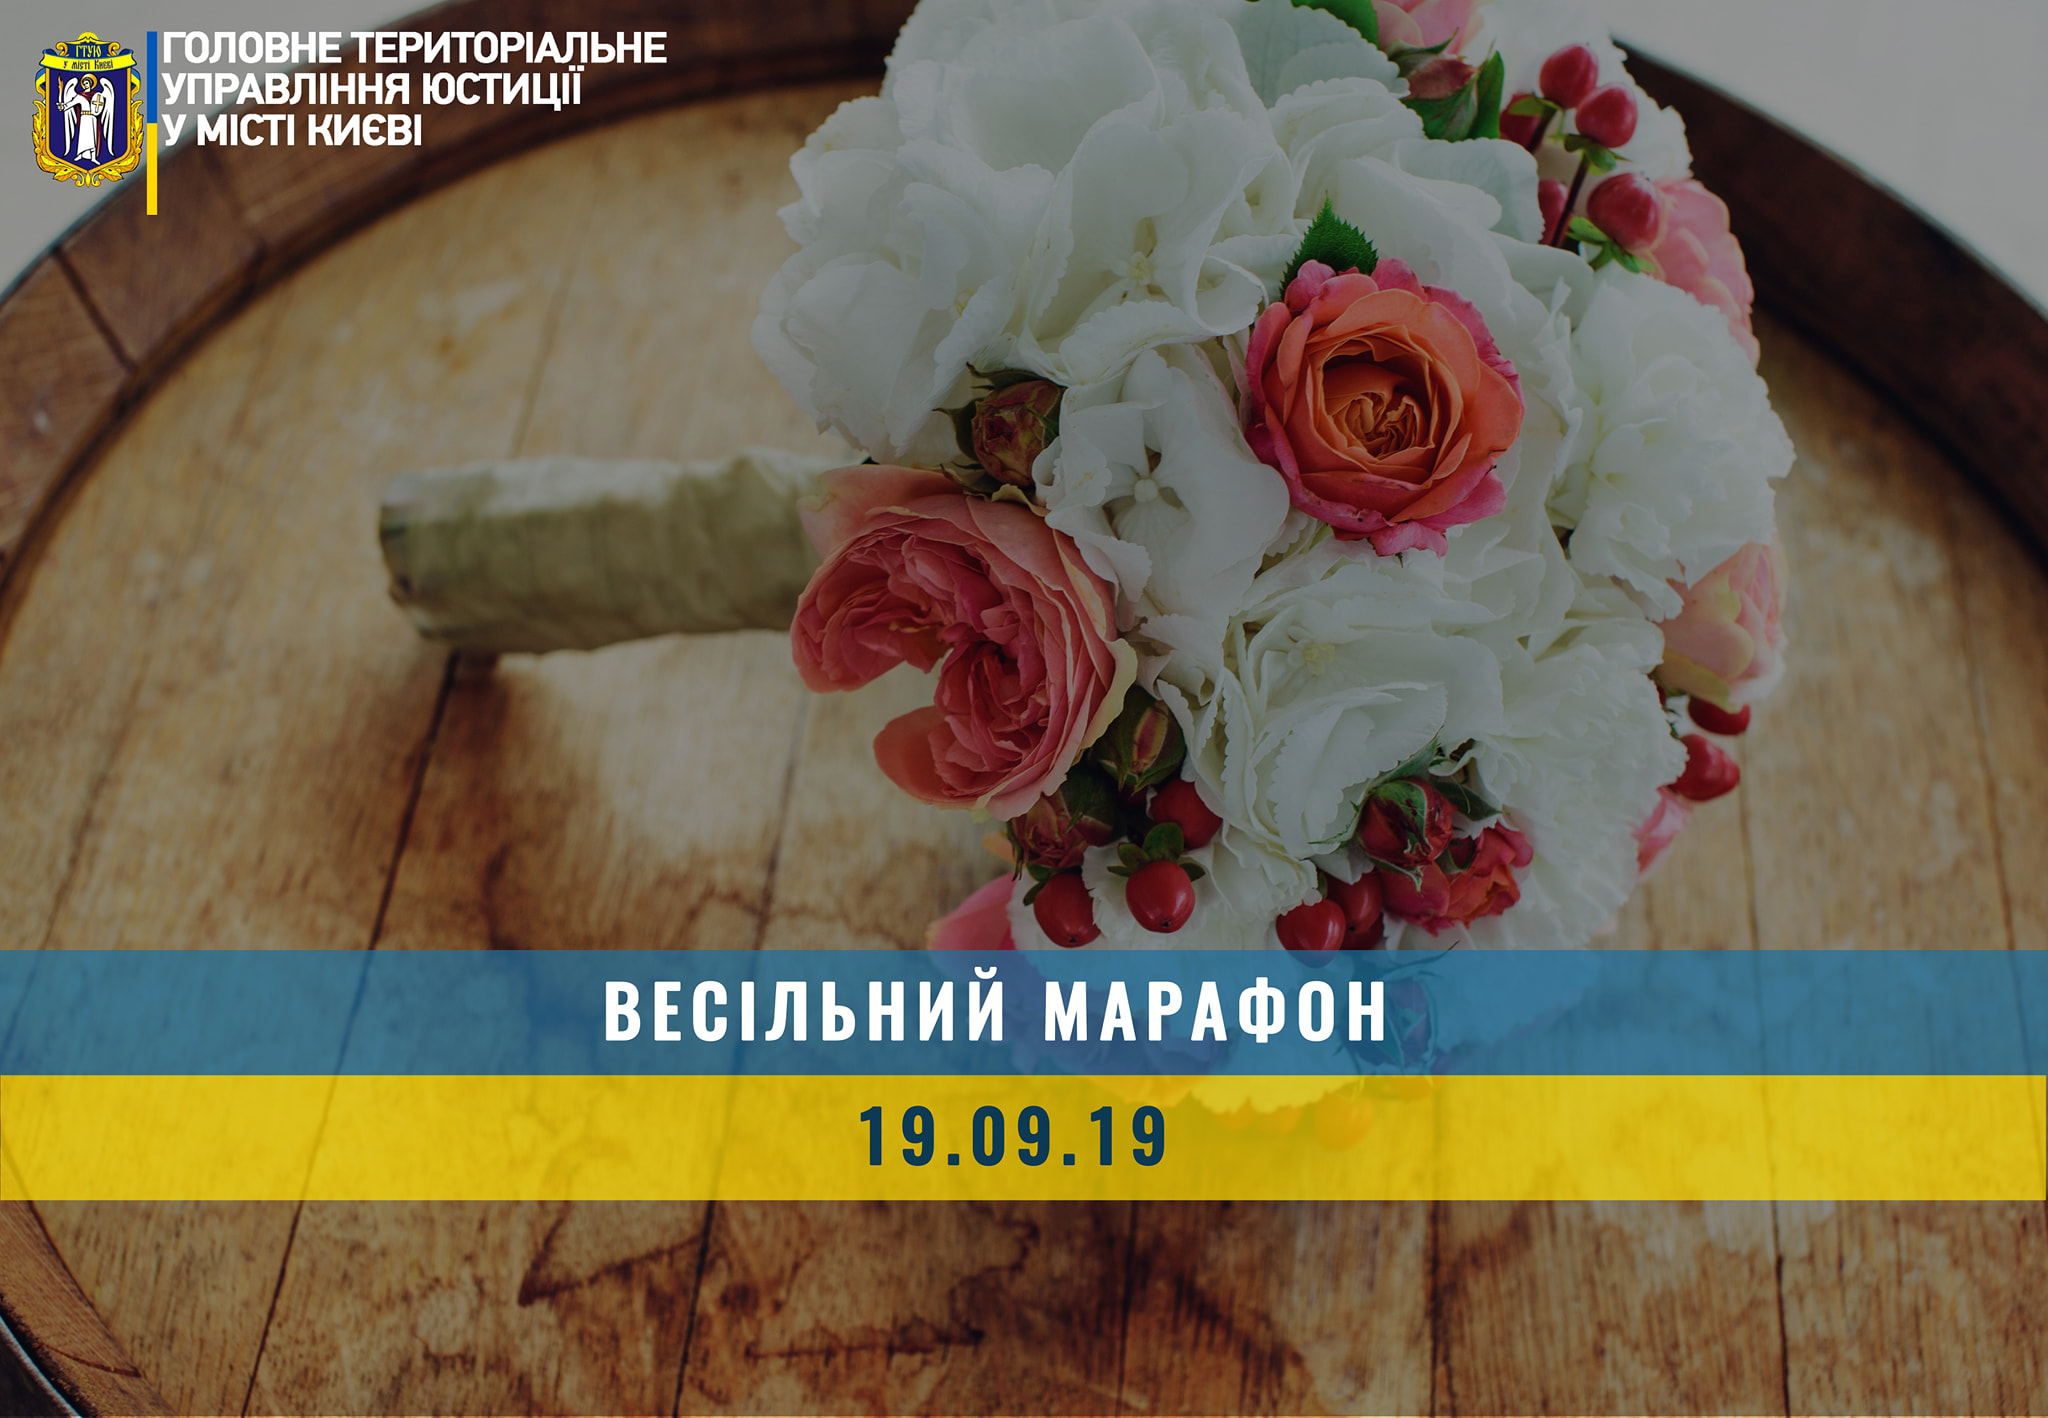 Сегодня, 19.09.2019, в Киеве пройдет 227 церемоний бракосочетания